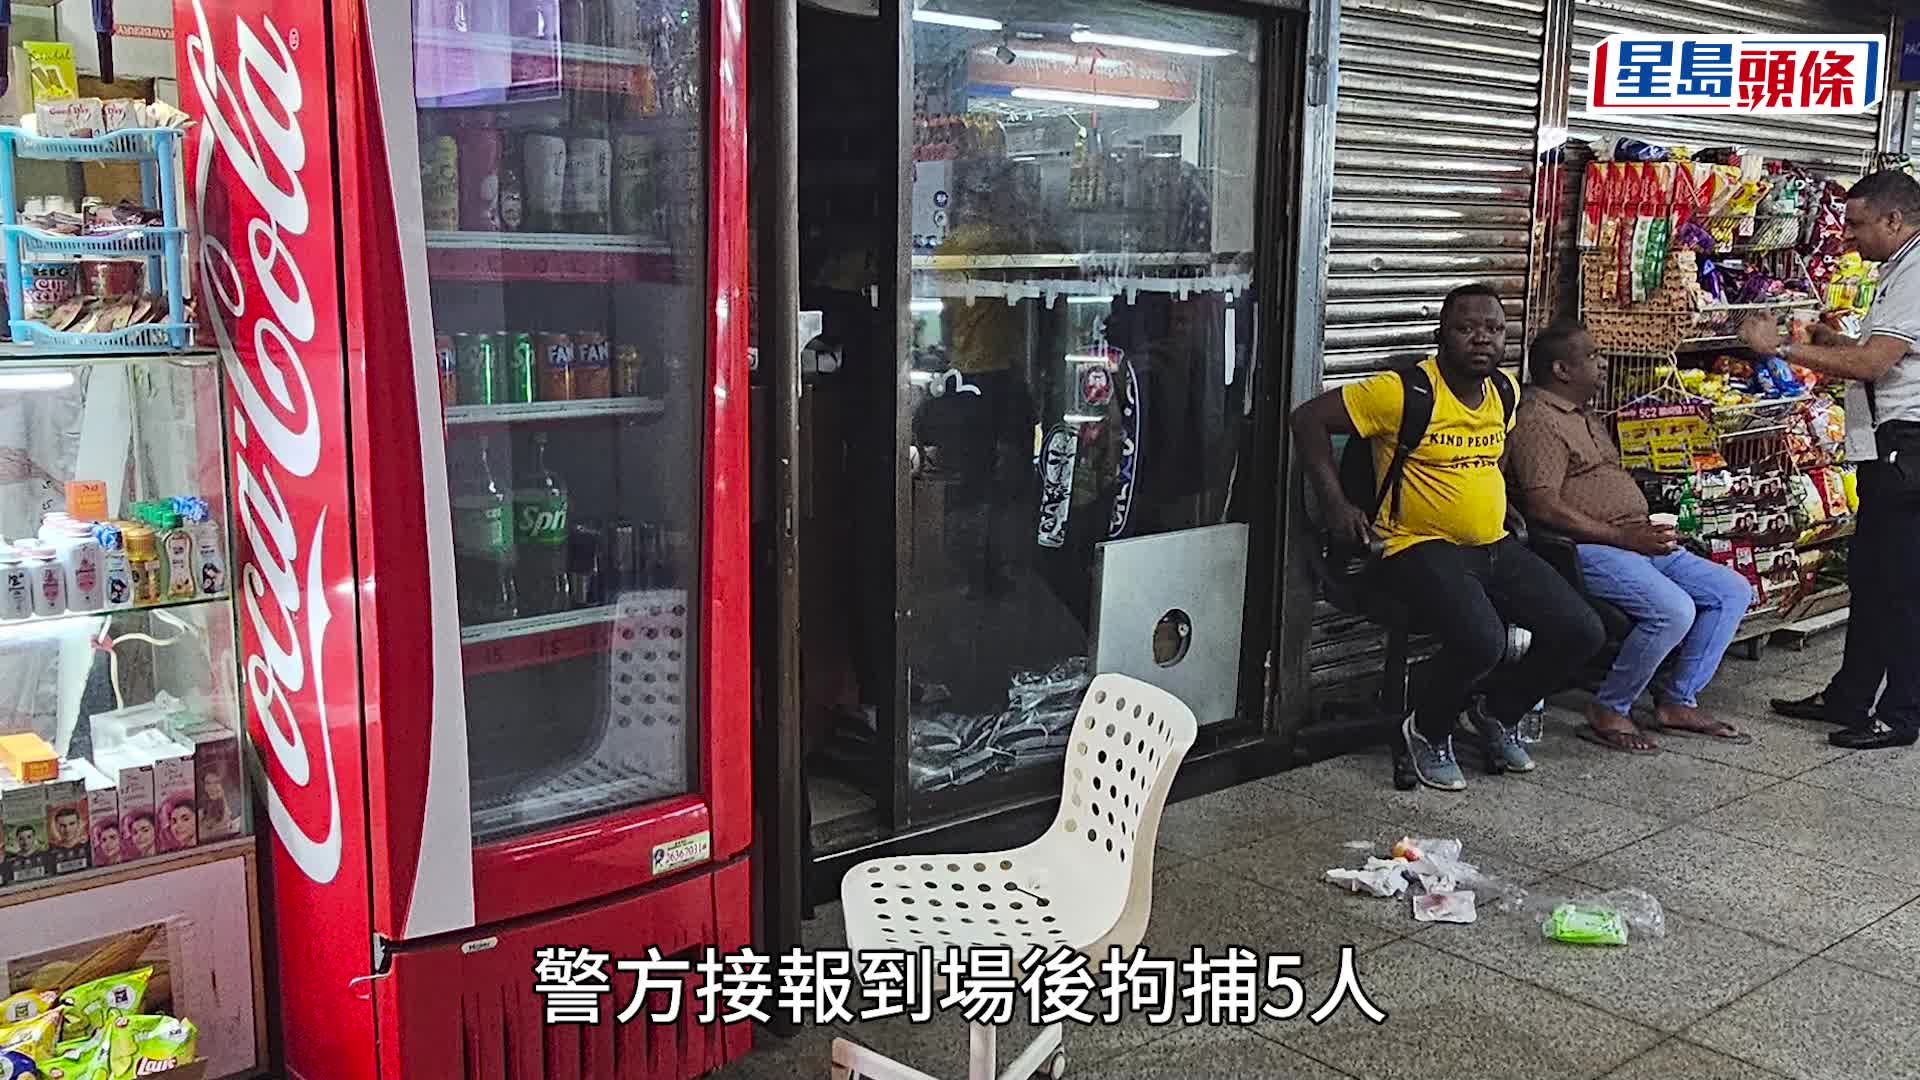 (重慶大廈南亞幫擸棍互毆 食肆被波及 警拘5人